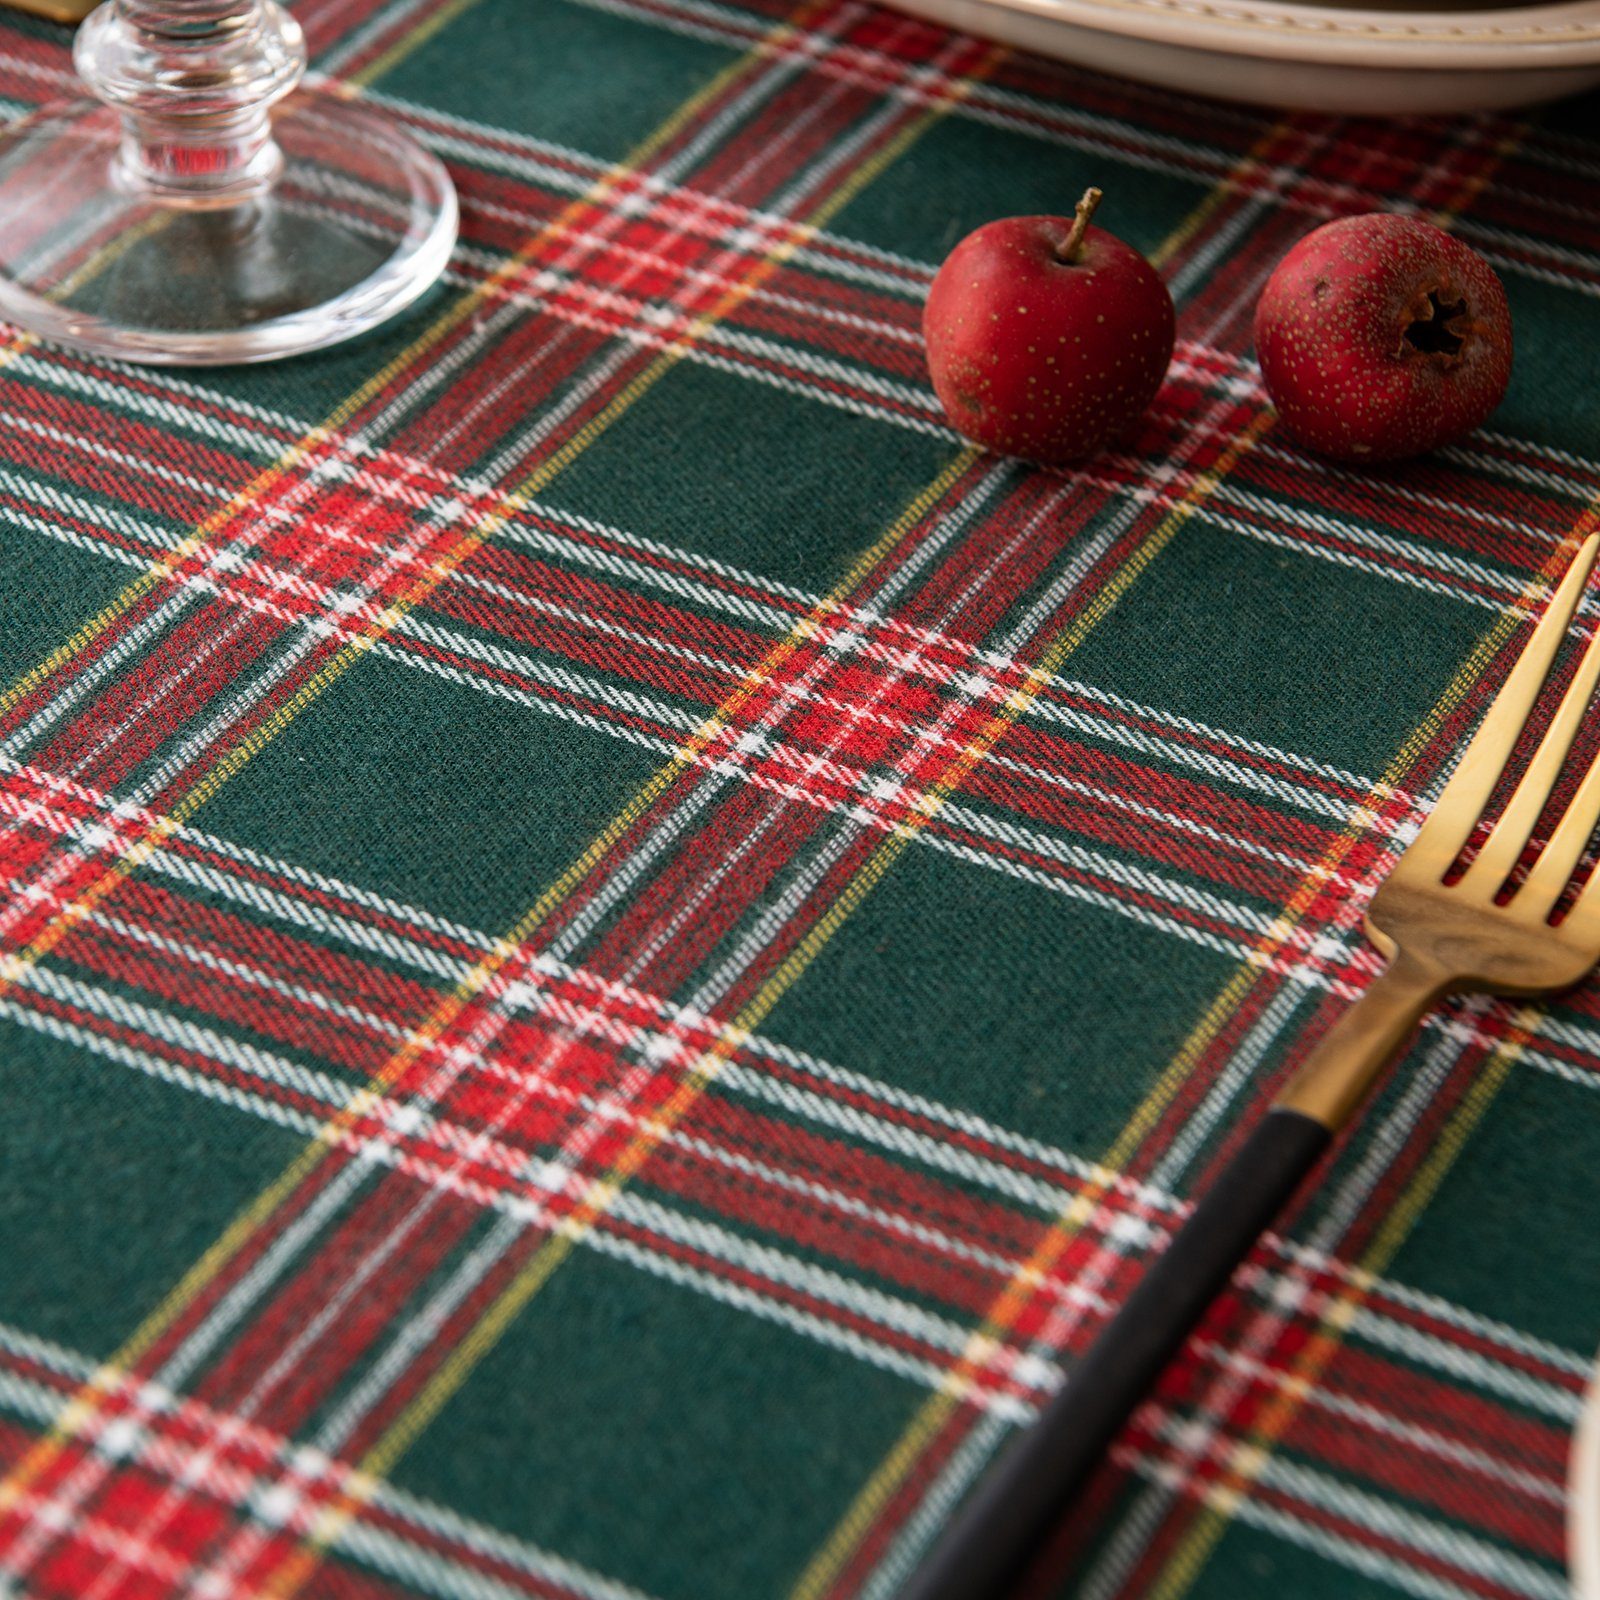 Qelus Tischläufer Tischdecke Karierte Rot&Grün Partydekoration Weihnachten Tischdecke